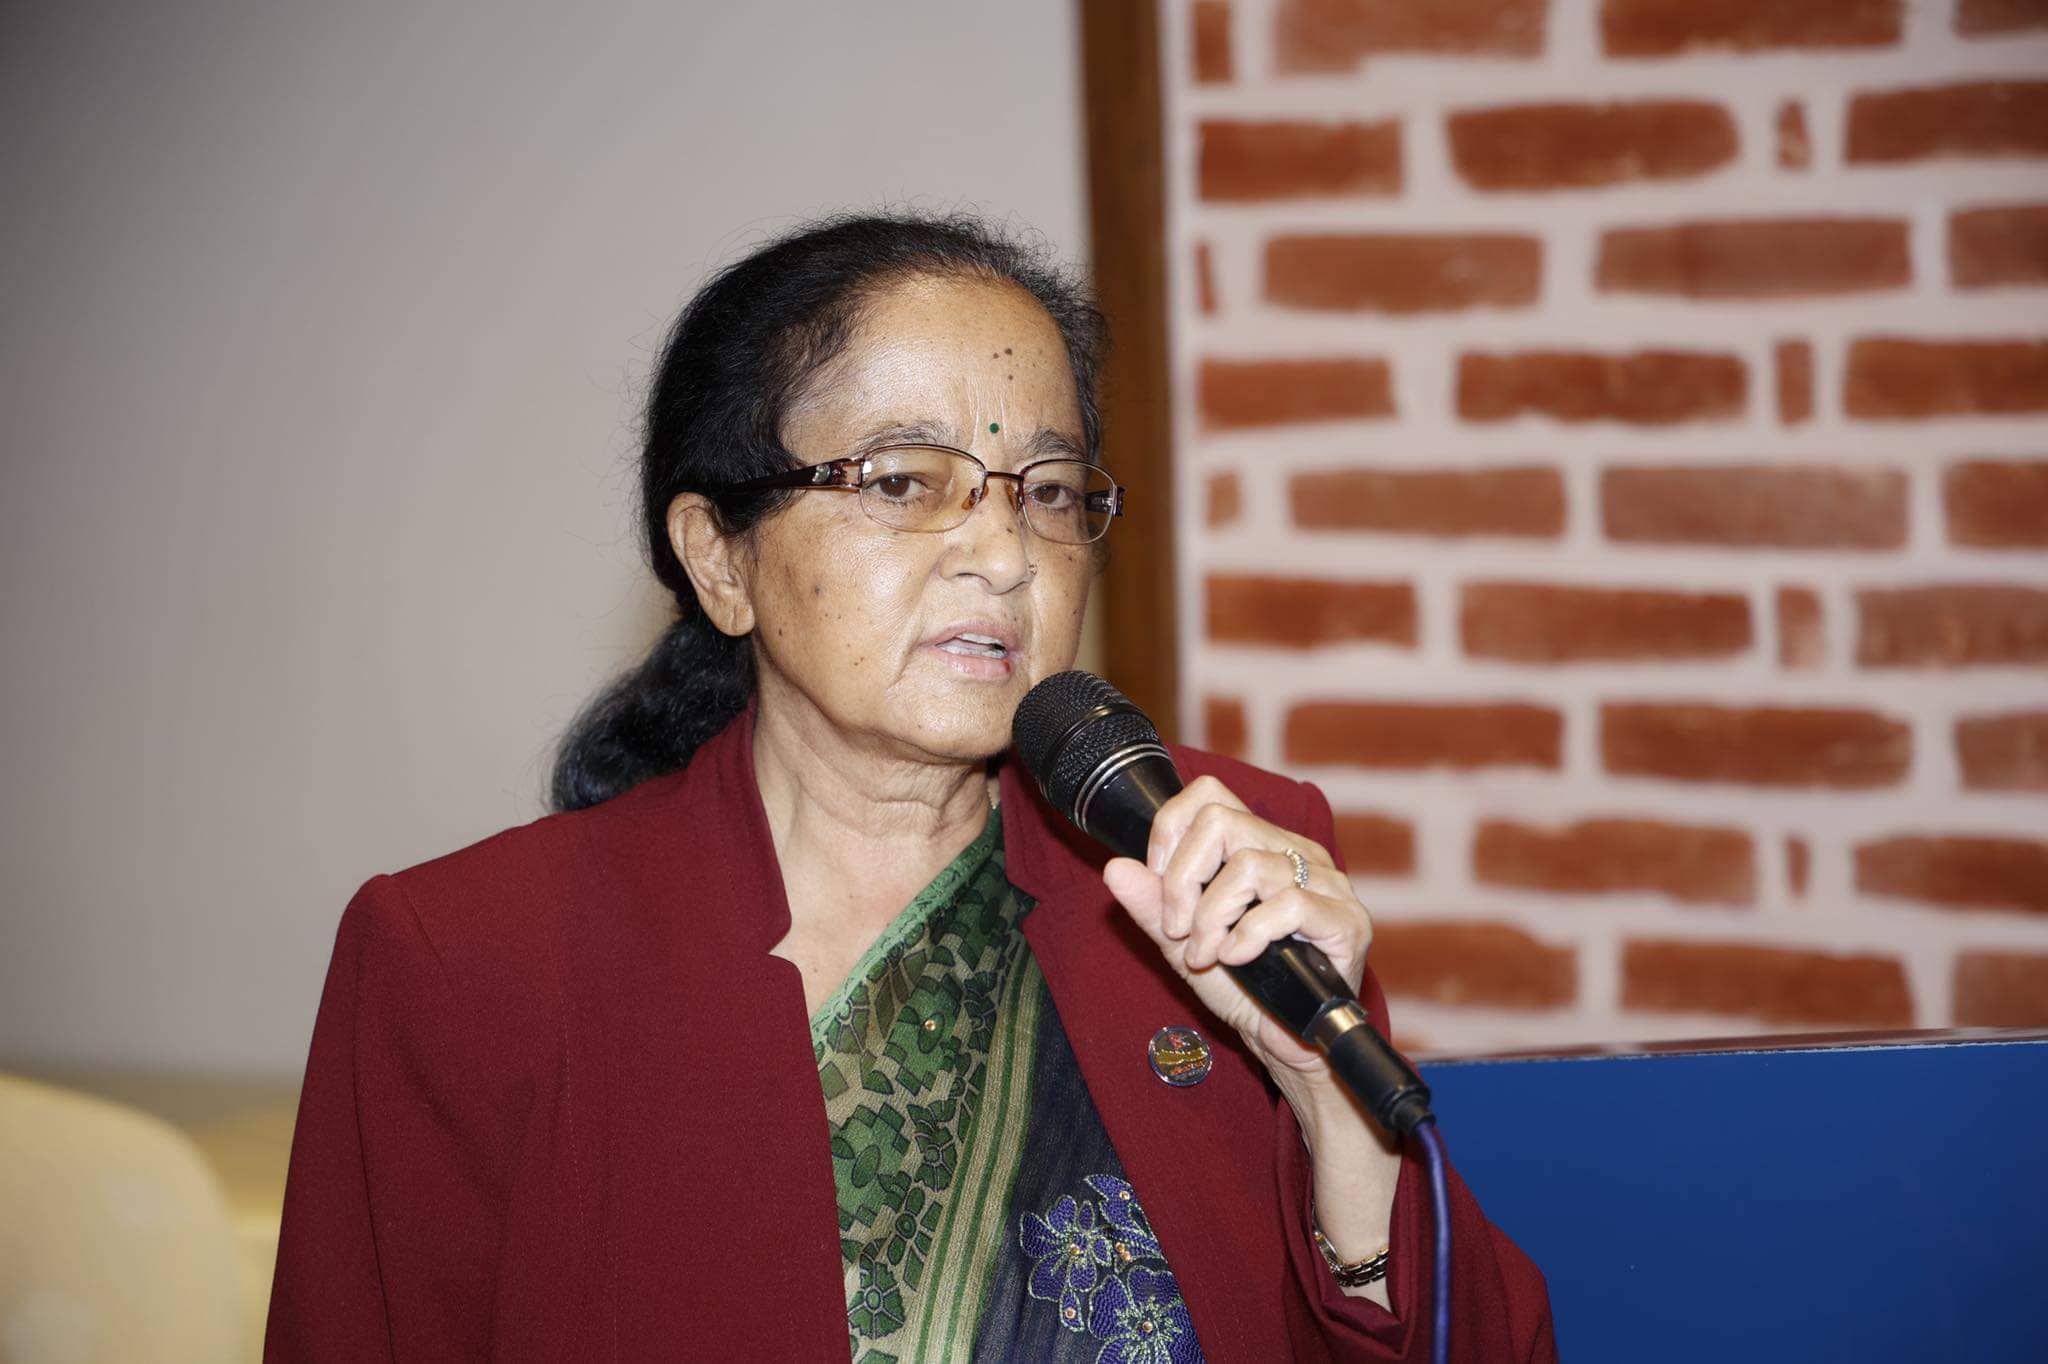 सीमान्तकृत महिलाहरूको समस्या समाधान गर्न कानुन बनाउँछौँ : मन्त्री रेग्मी